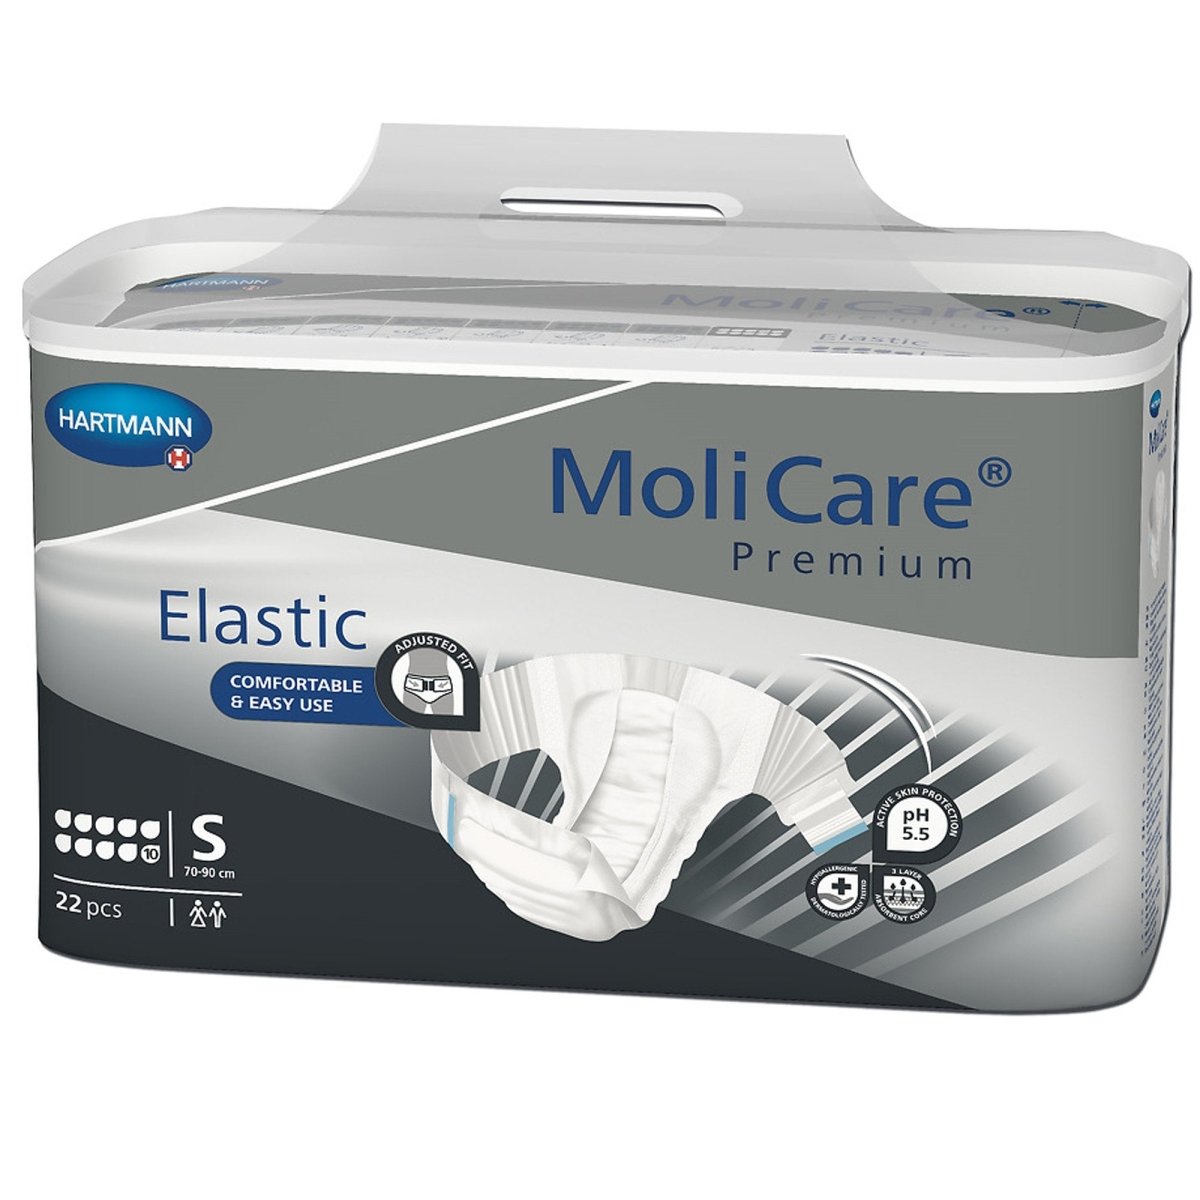 MoliCare Premium Elastic Incontinence Briefs -Unisex - 1153085_CS - 1